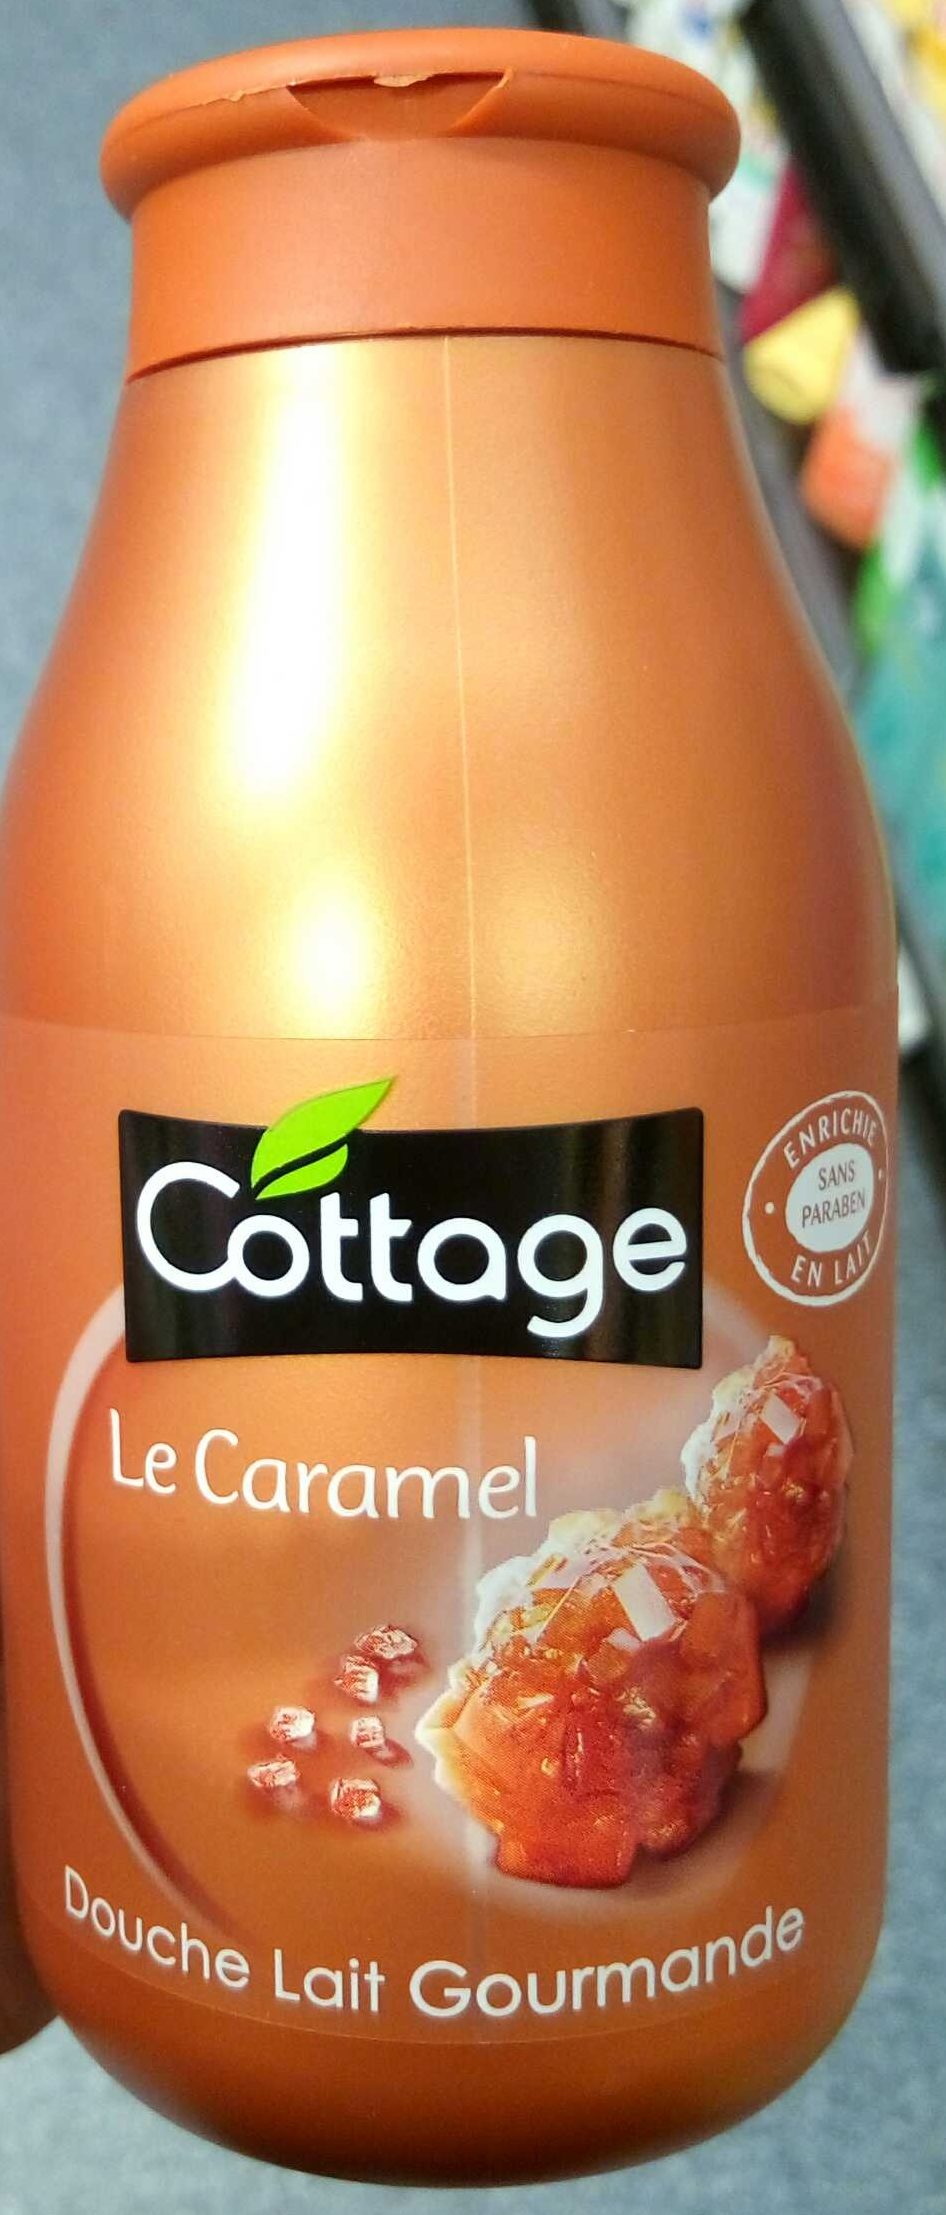 Le Caramel Douche Lait Gourmande - 製品 - fr